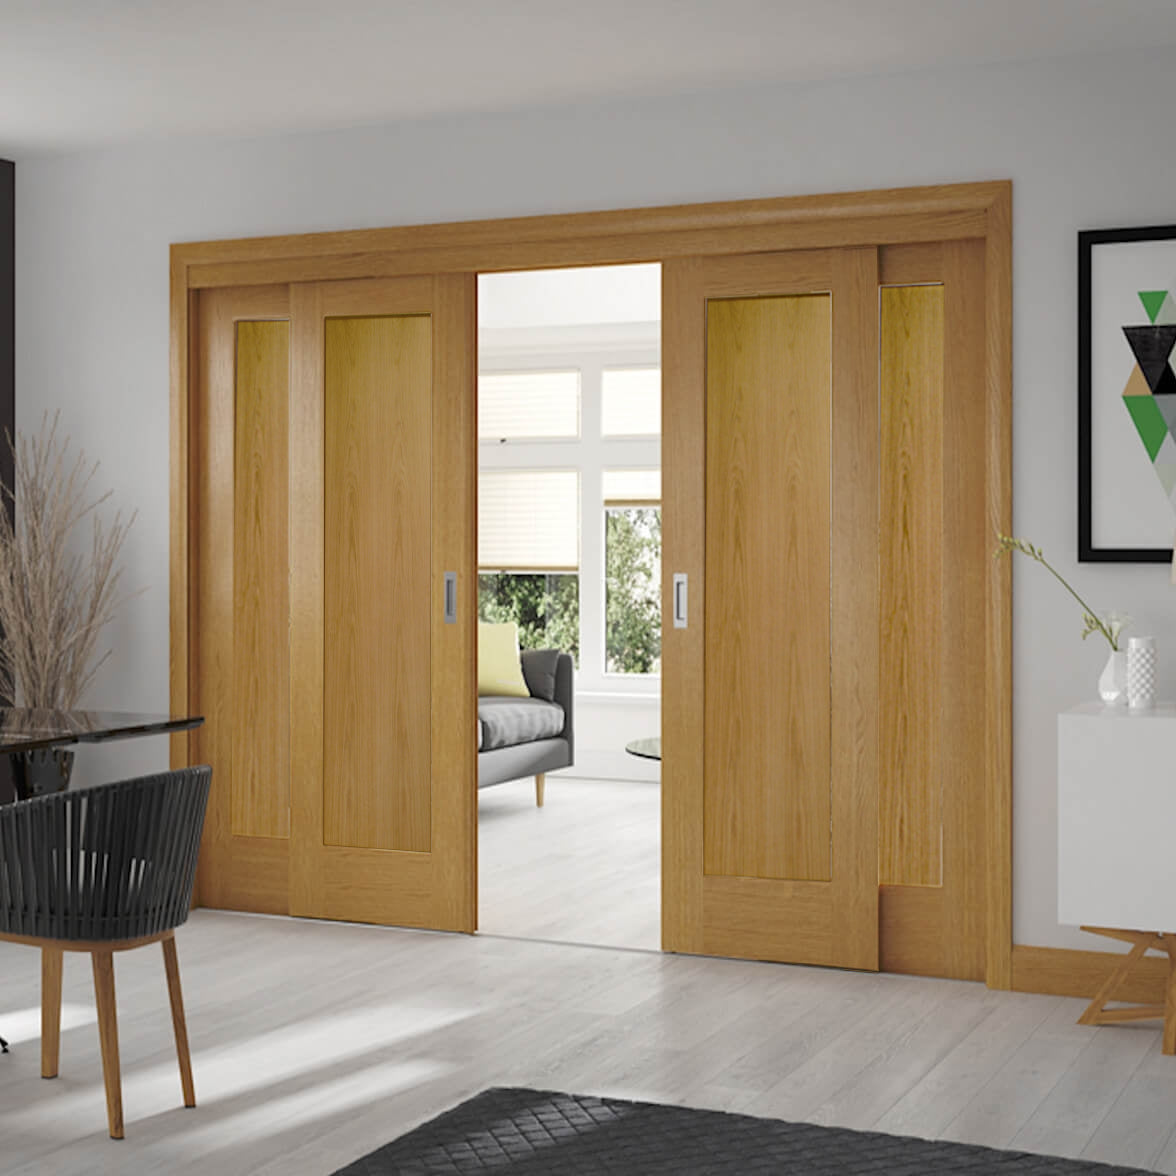 Buy Sliding French Doors with Pattern 10 Doors | Emerald Doors